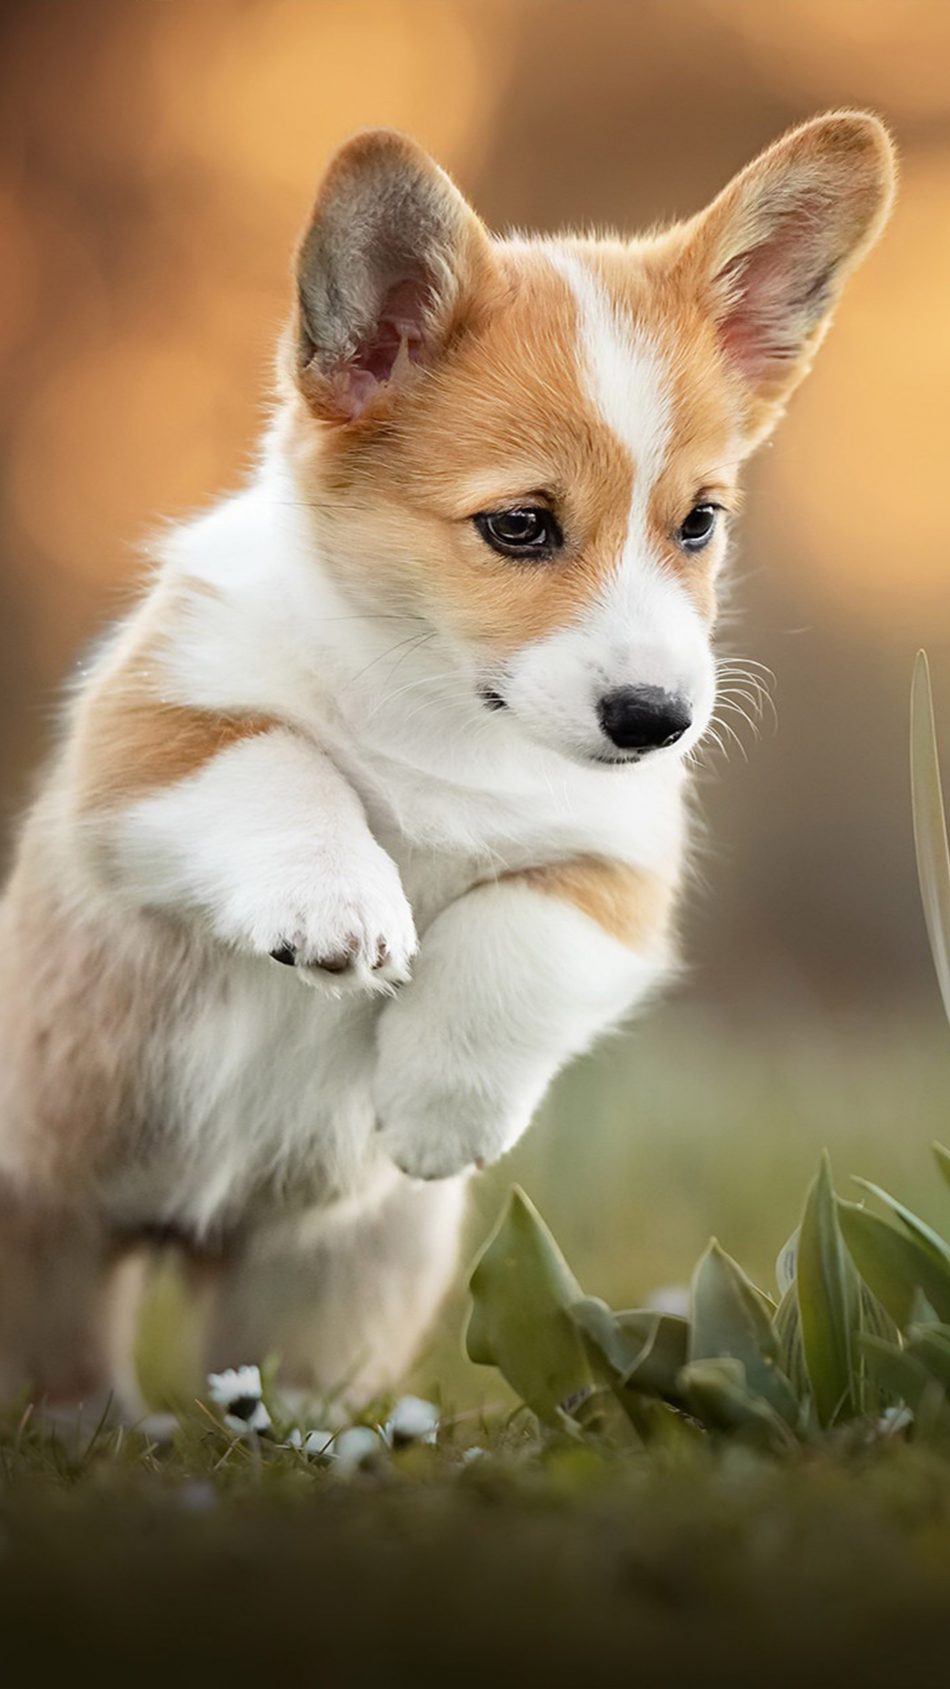 Corgi Puppy Pet Dog 4K Ultra HD Mobile Wallpaper